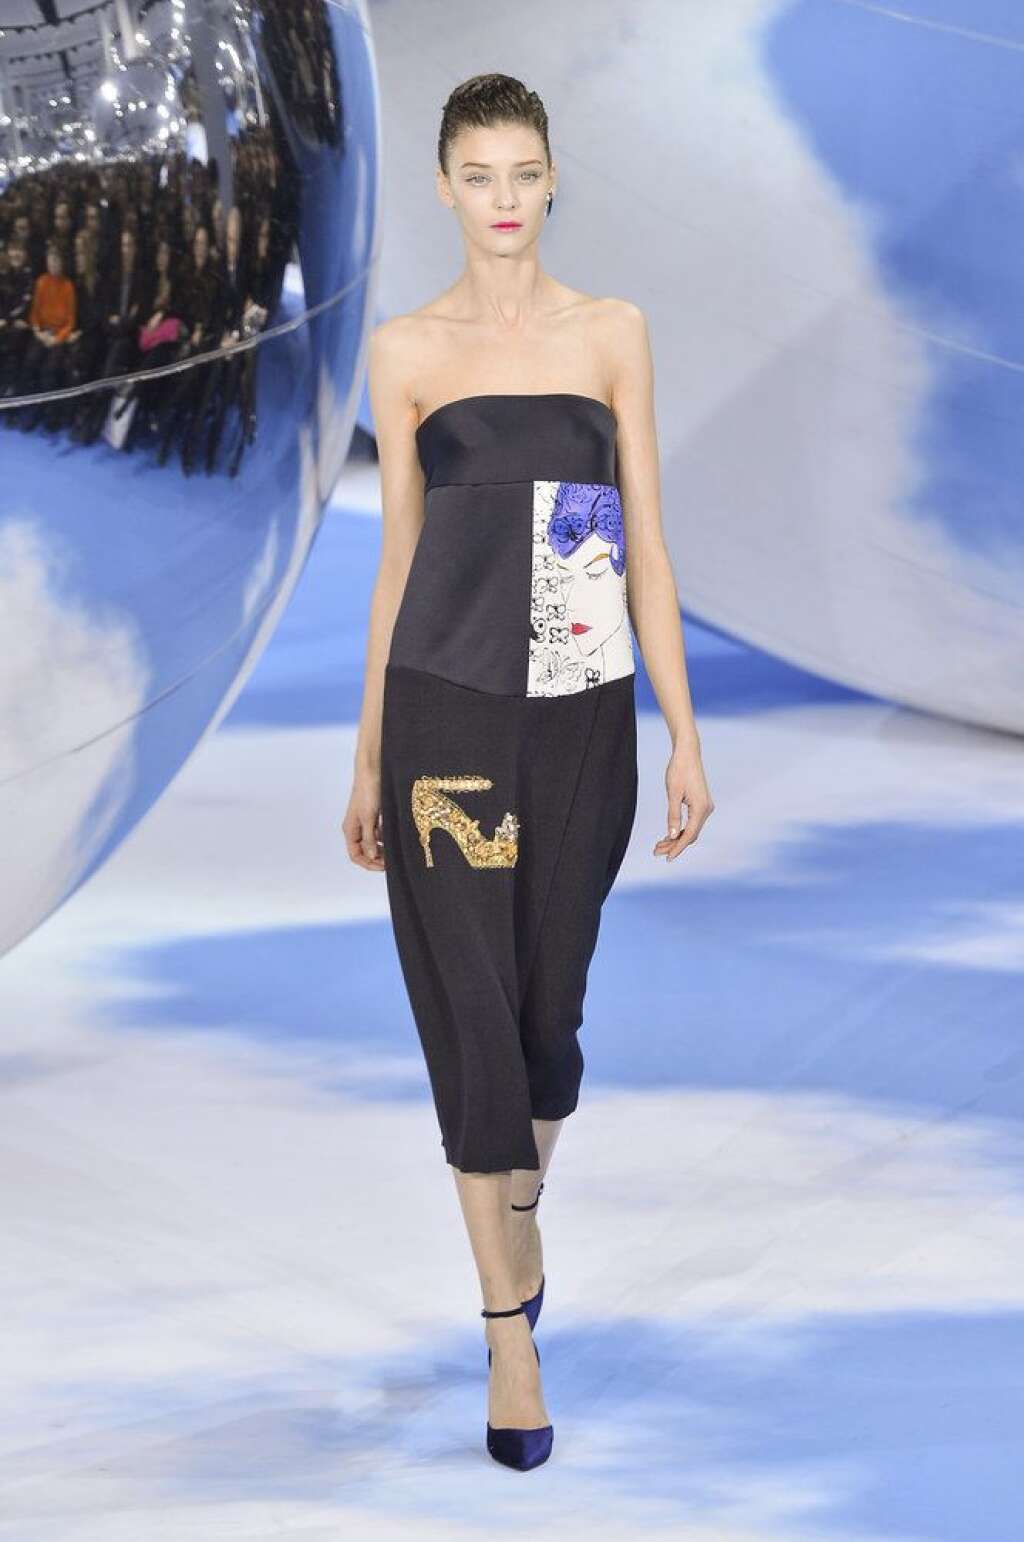 Le surréalisme de Dior - <a href="http://www.huffingtonpost.fr/raphaelle%20orsini/fashion-week-paris-dior_b_2804698.html">Voir le billet</a>  Fashion week de Paris: <em>Automne-Hiver 2013-2014</em>